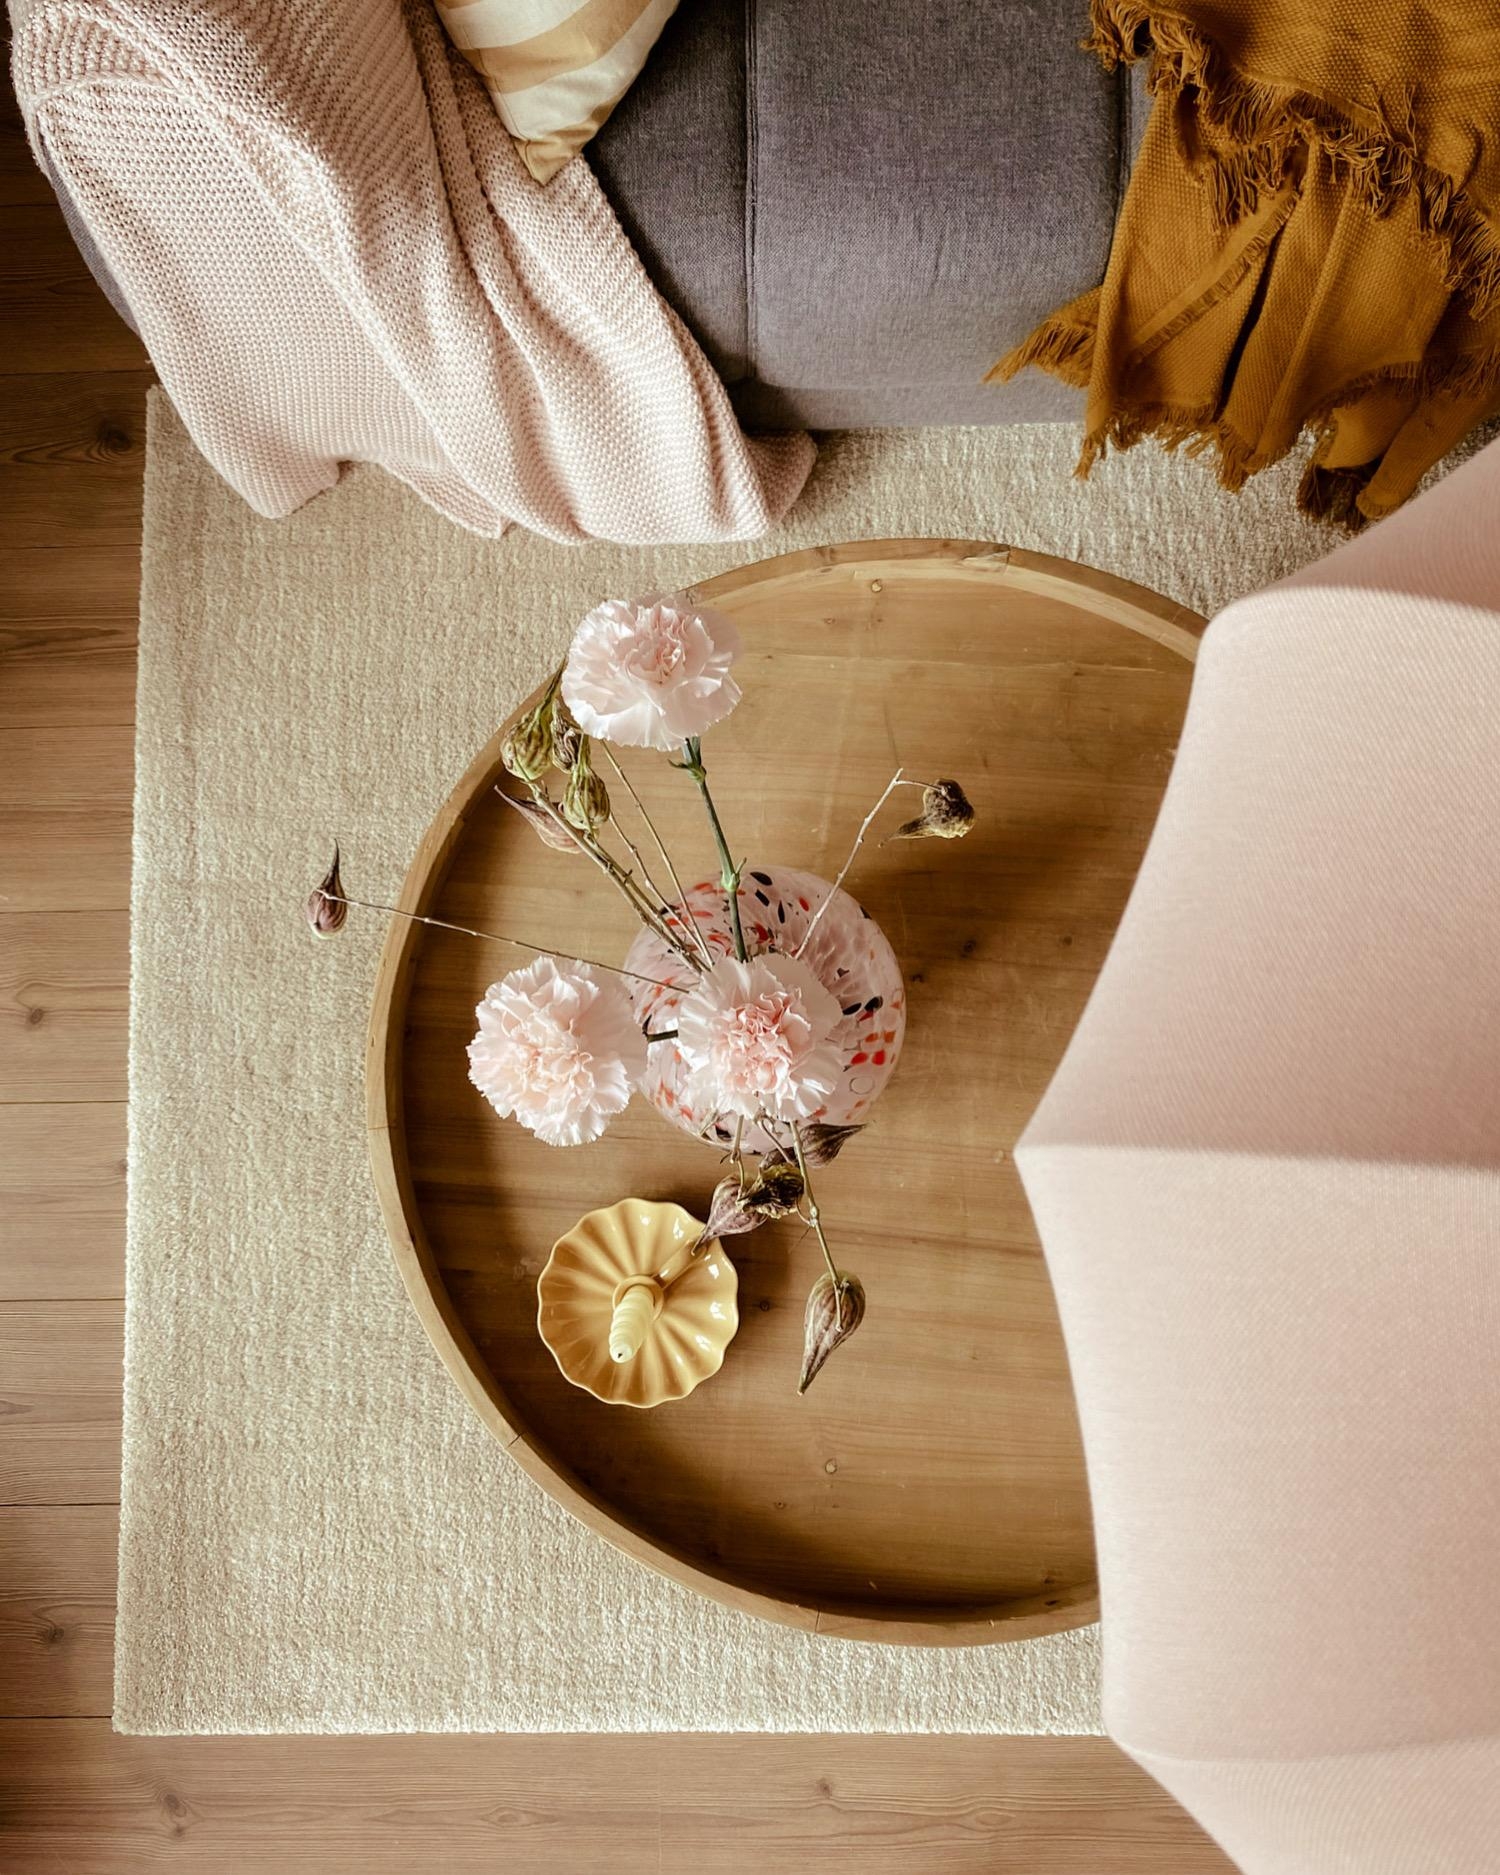 On my table ....
#livingroom#couchstyle#flowers#couchtisch#tischdeko#cozy#homestyle#skandinavischwohnen
